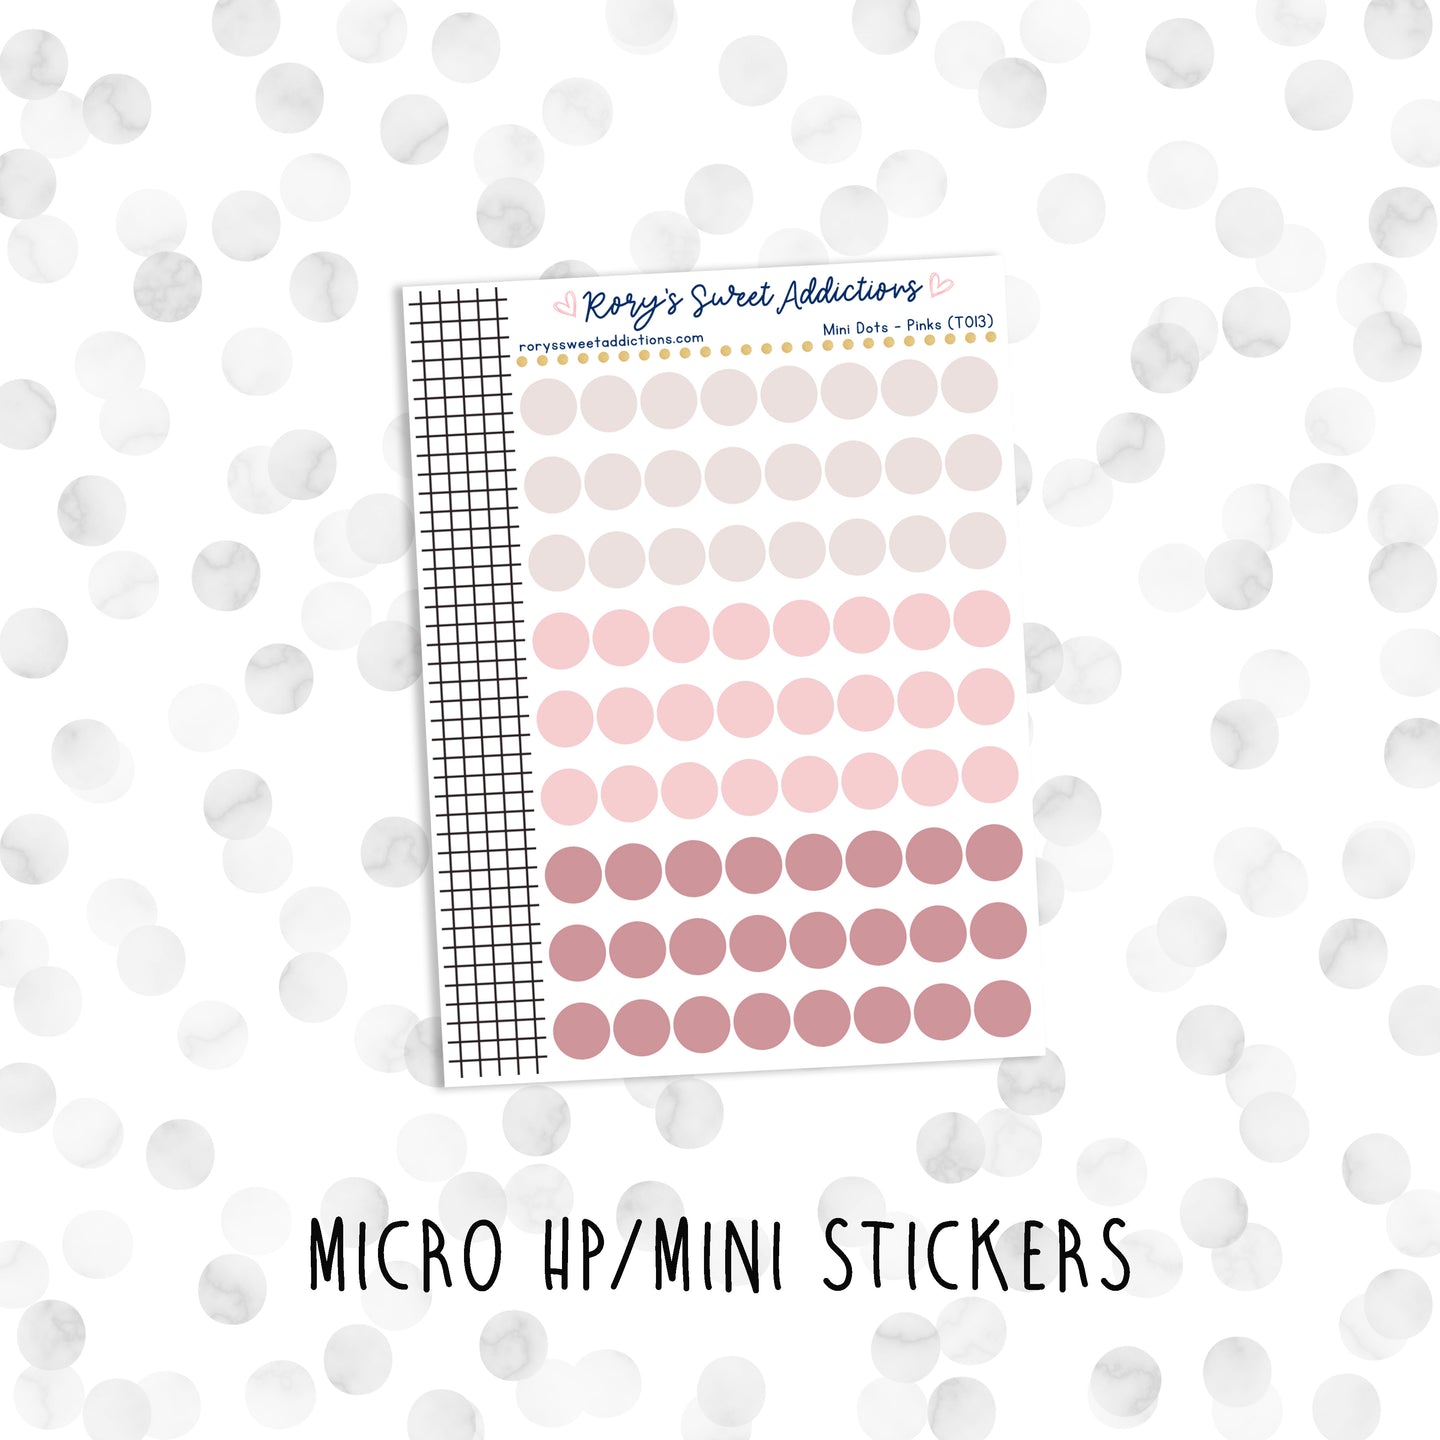 Mini Dots - Pinks // Micro HP - Mini Stickers